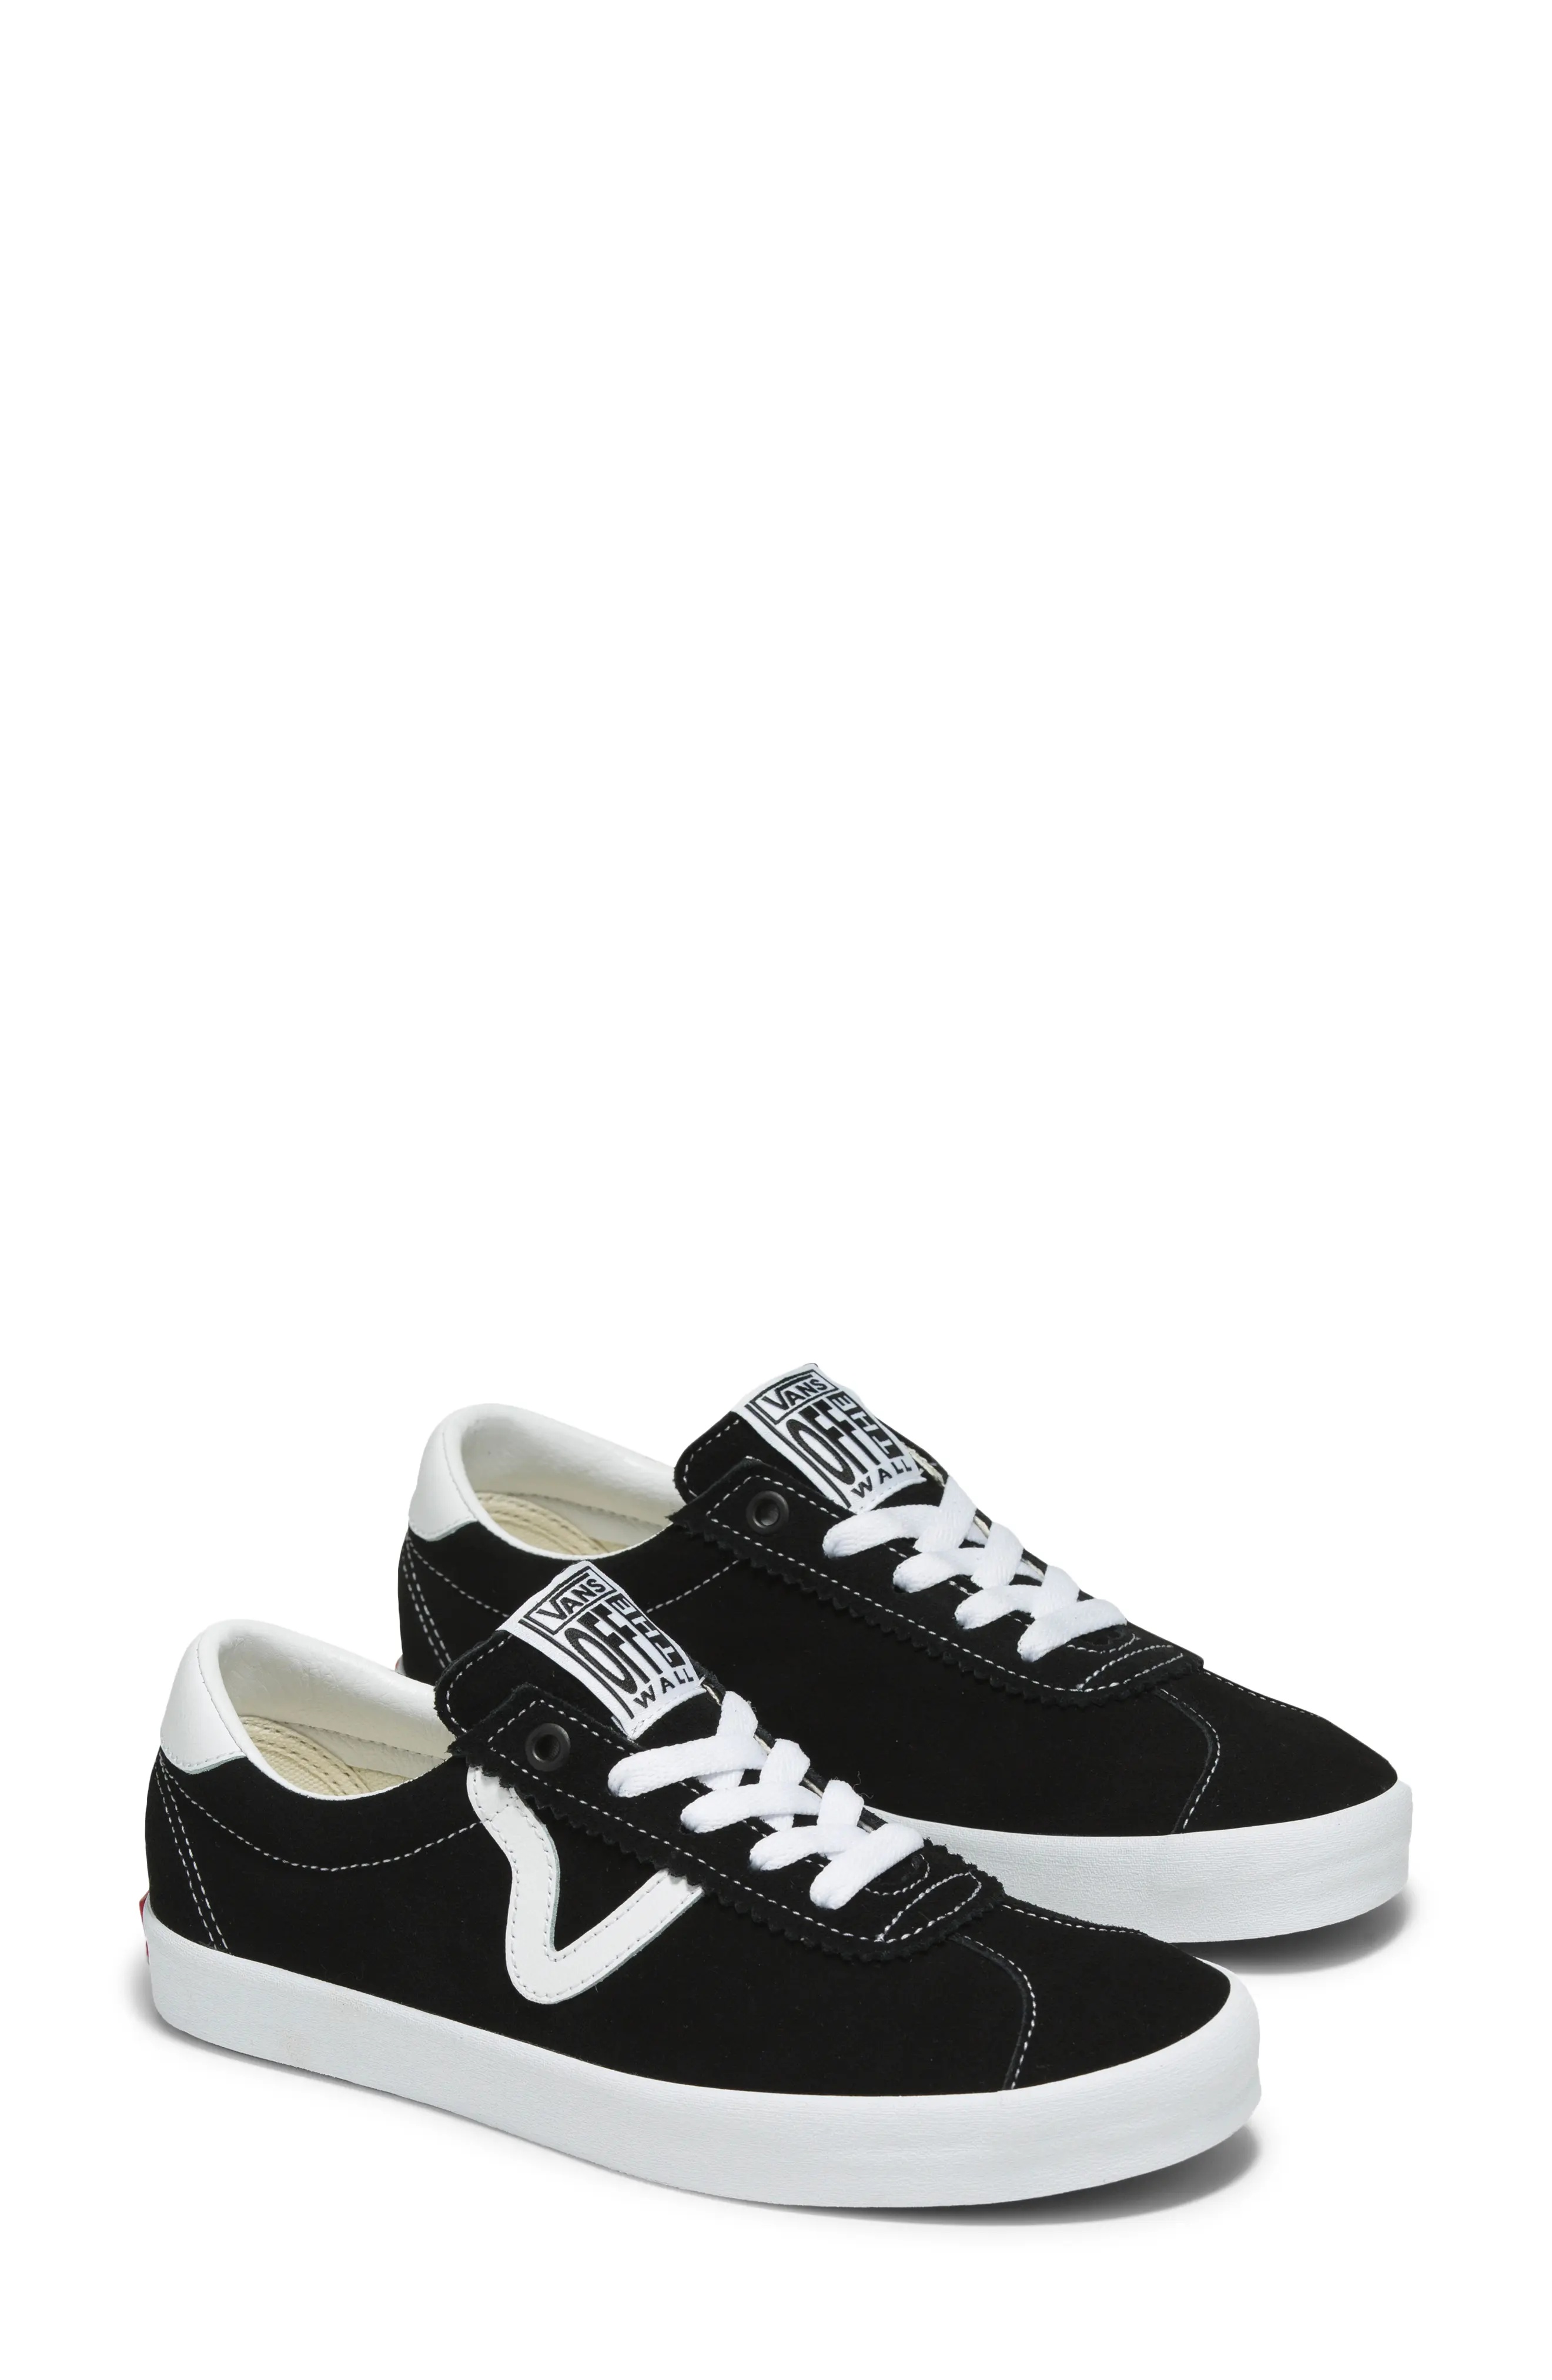 Sport Low Sneaker in Black/White - 1